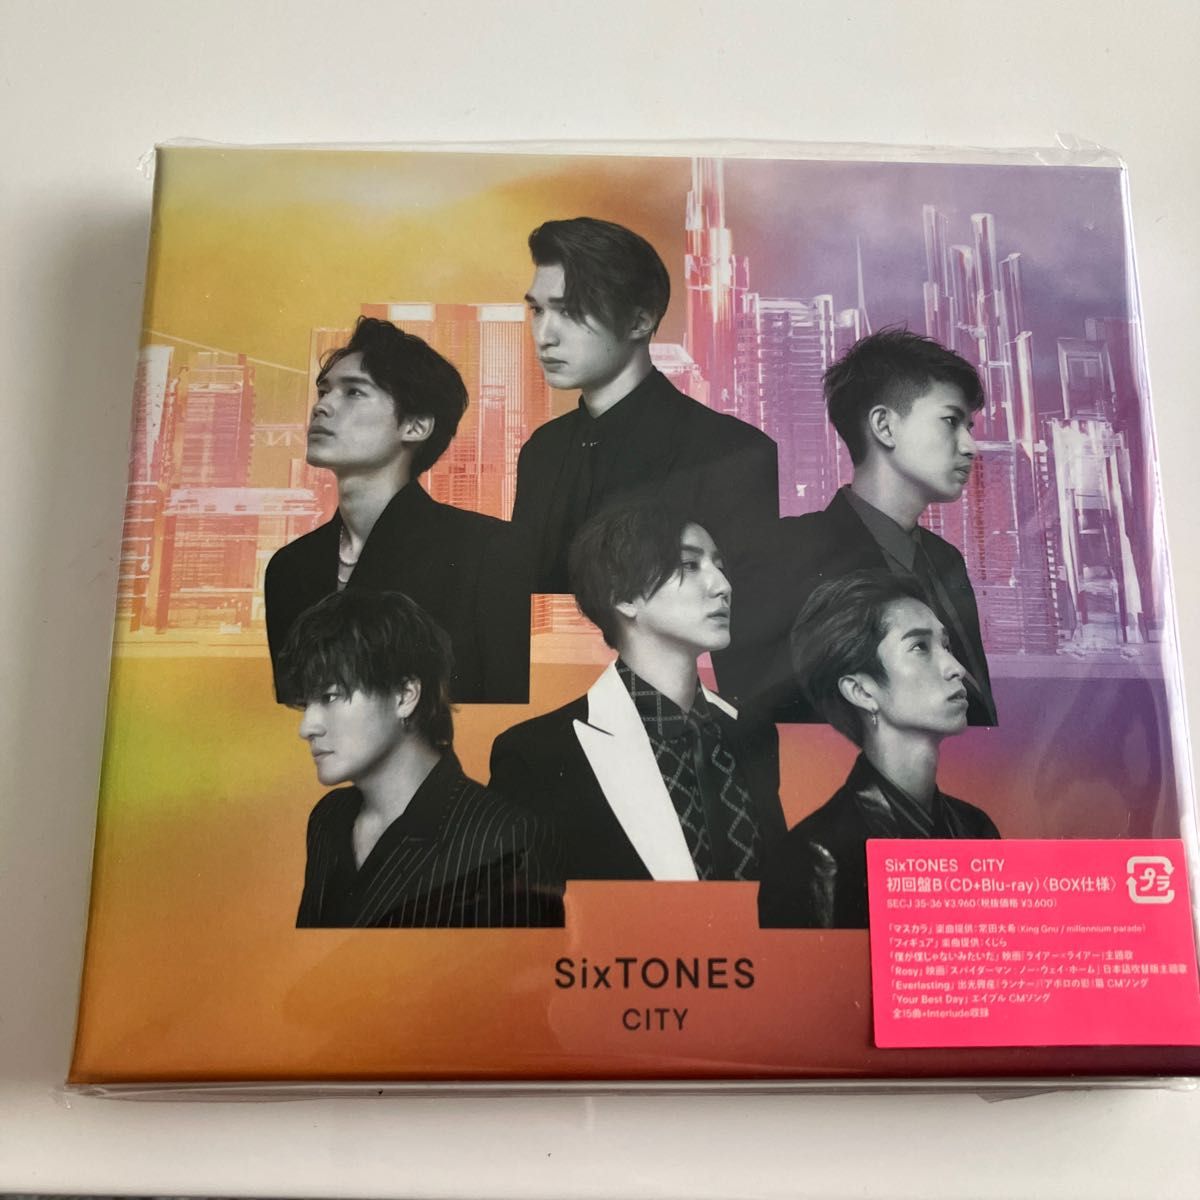 アルバム初回盤B Blu-ray付 BOX仕様 SixTONES CD+Blu-ray CITY 